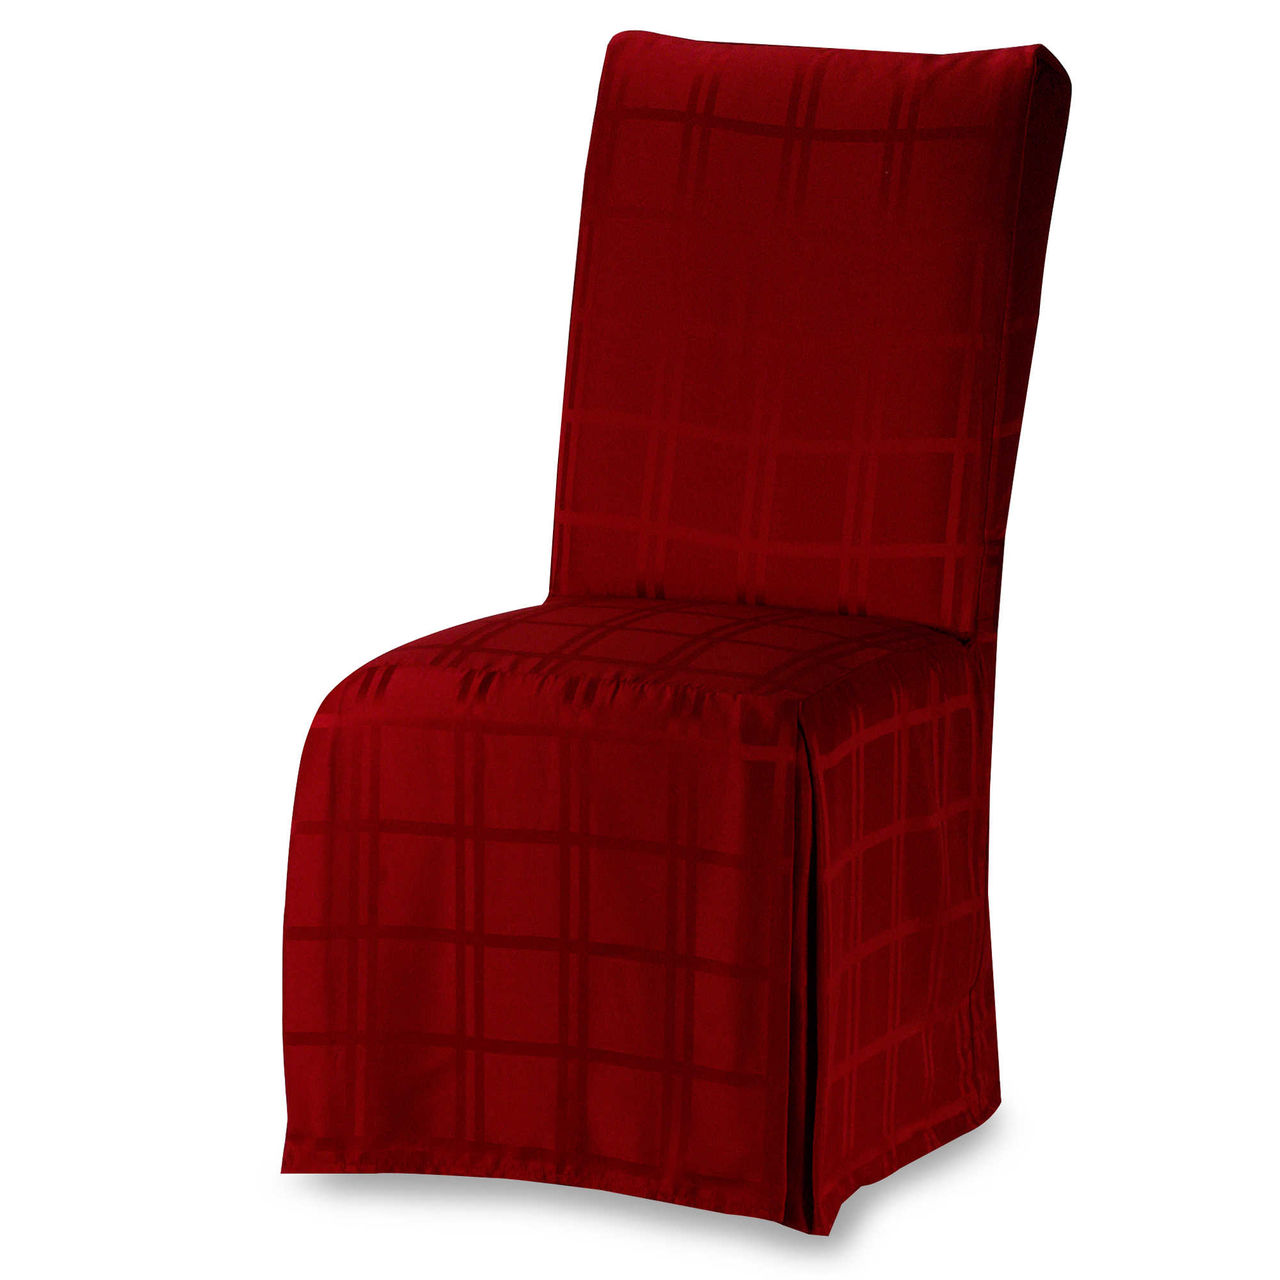 Красный тканевый чехол на весь стул